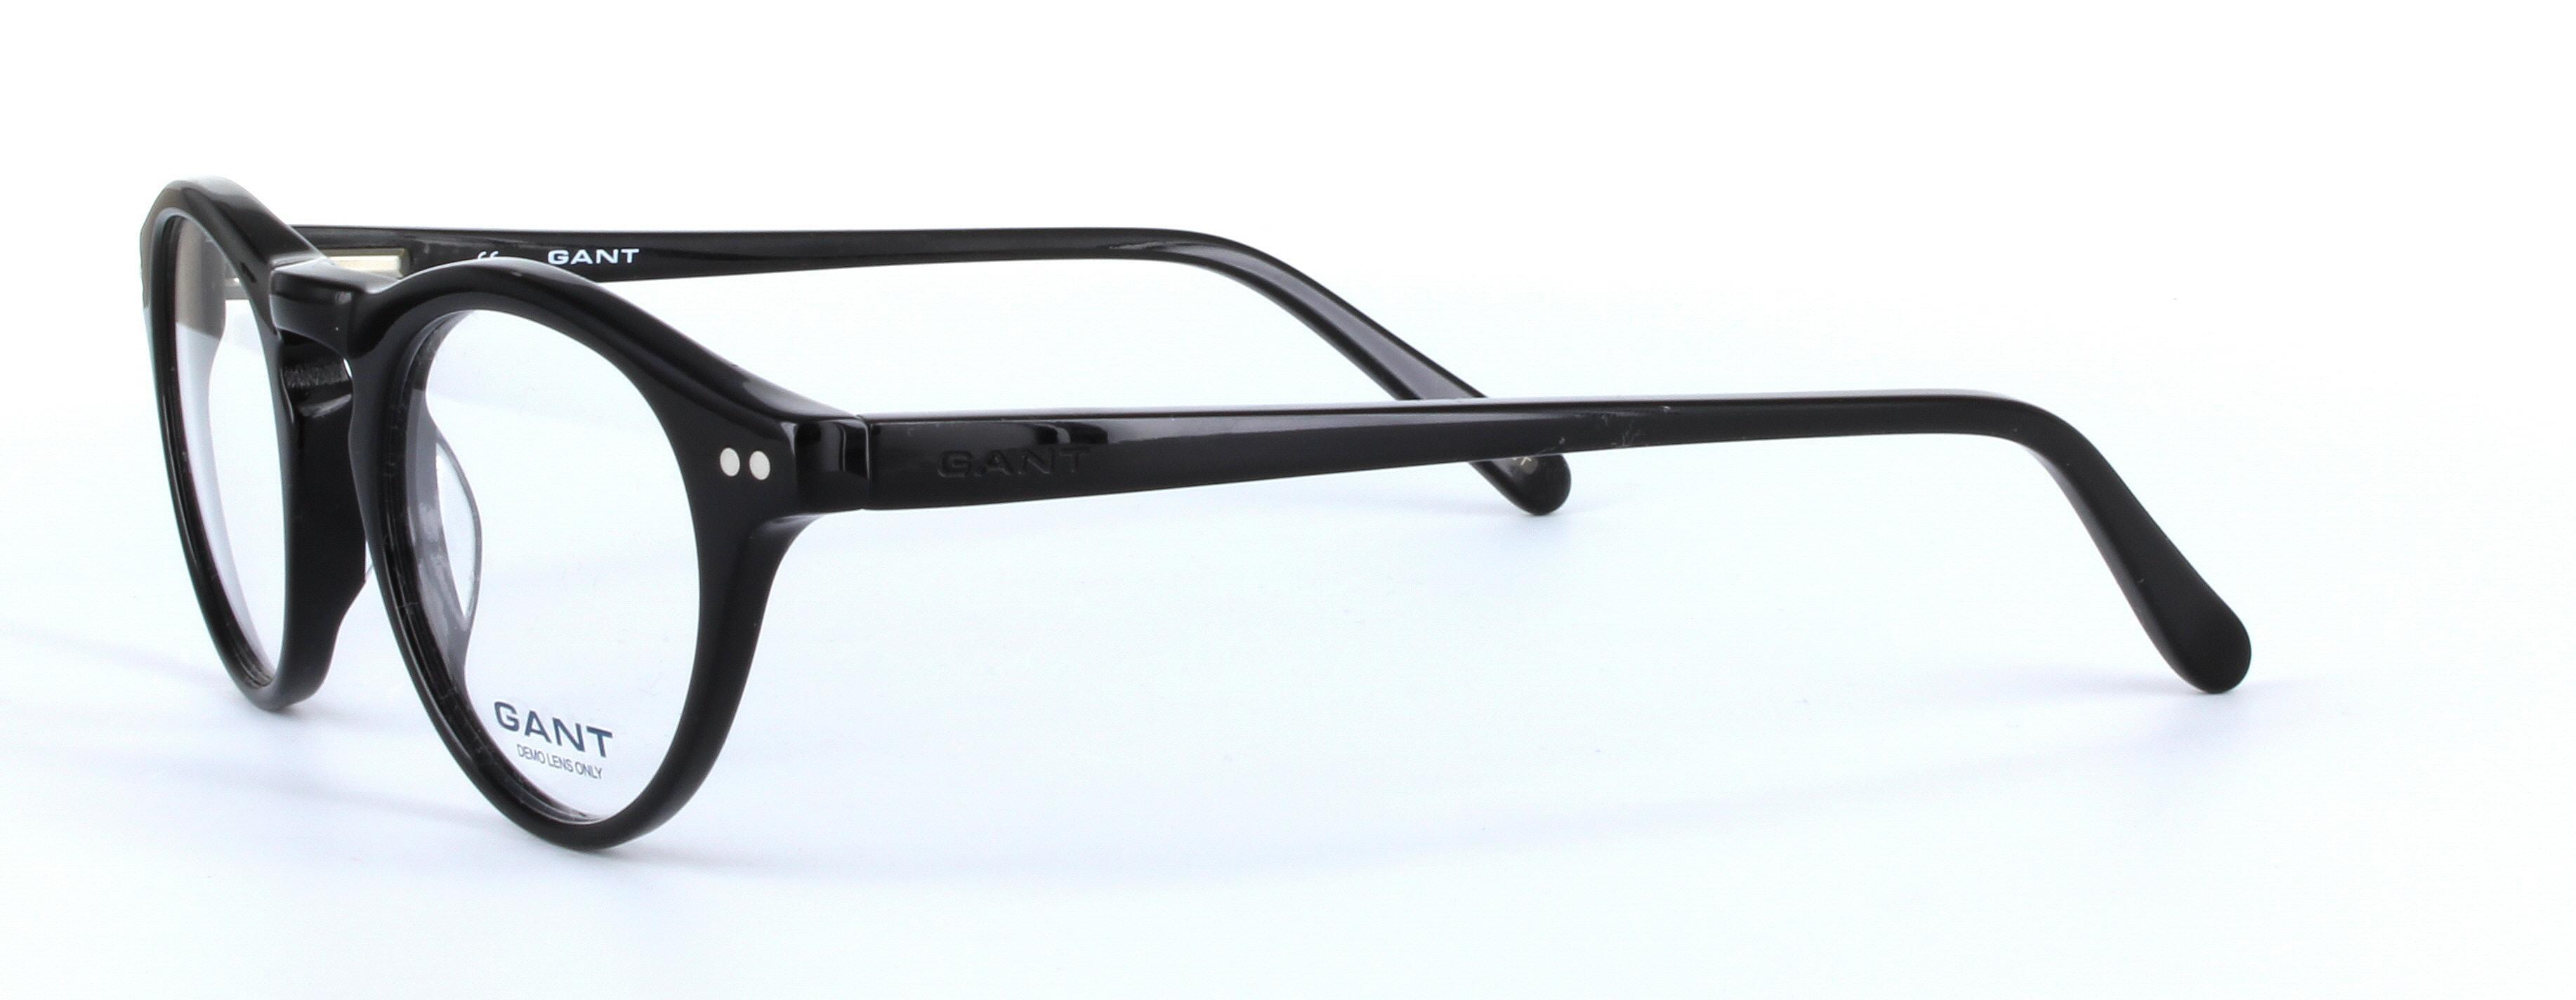 GANT TUPPER Black Full Rim Round Acetate Glasses - Image View 2